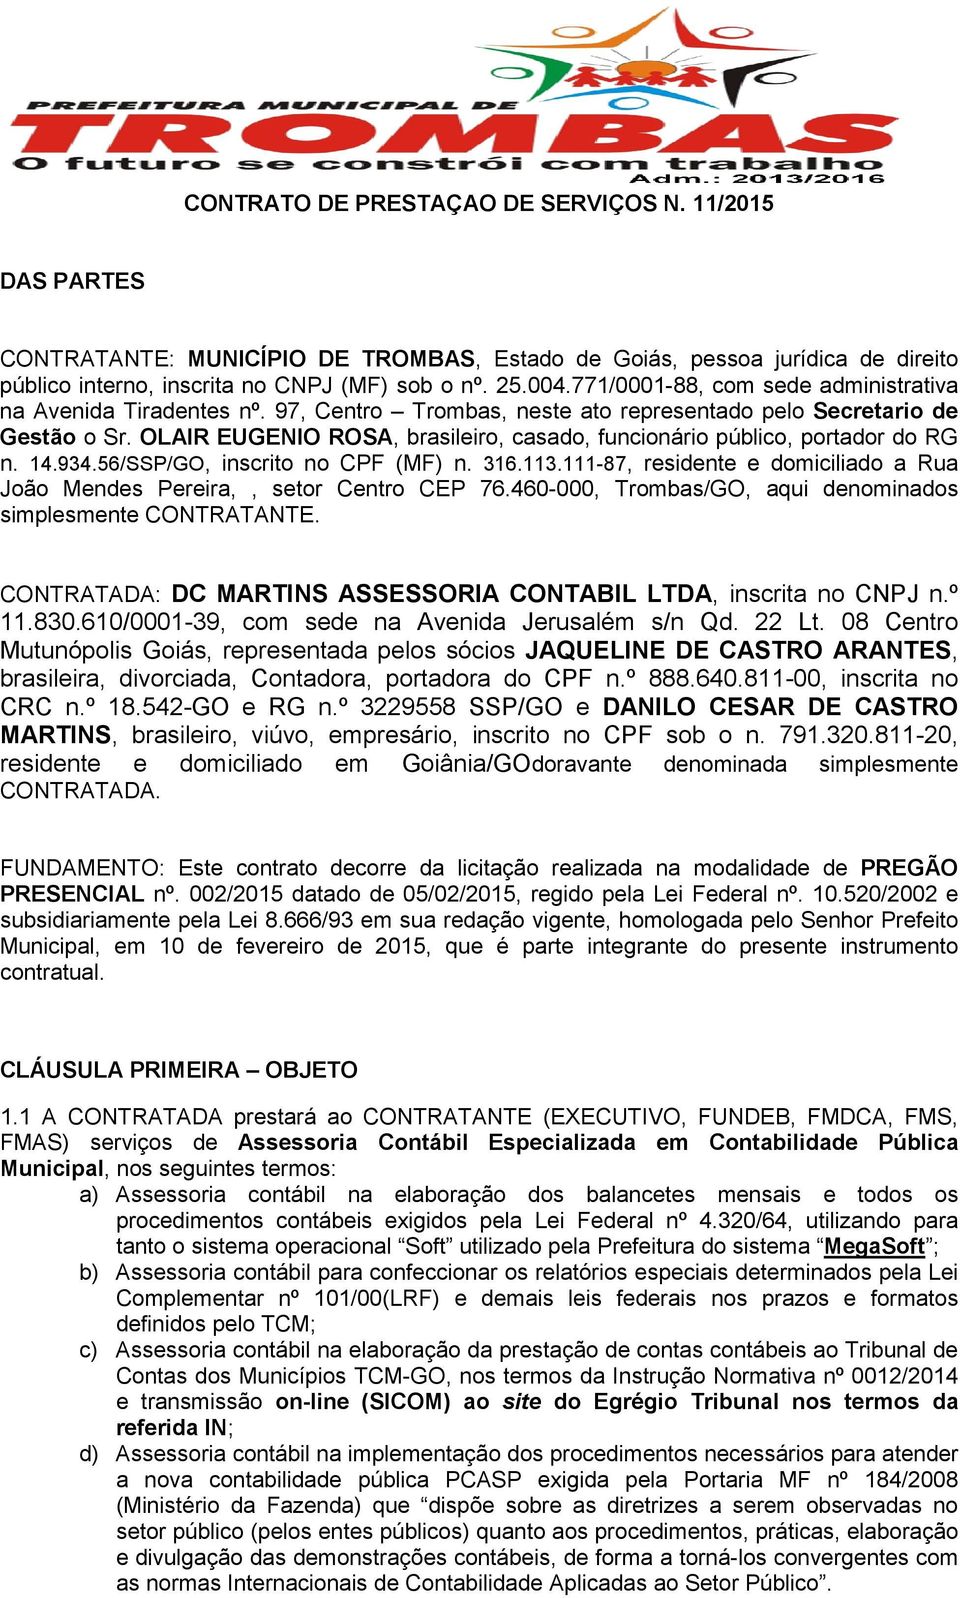 OLAIR EUGENIO ROSA, brasileiro, casado, funcionário público, portador do RG n. 14.934.56/SSP/GO, inscrito no CPF (MF) n. 316.113.